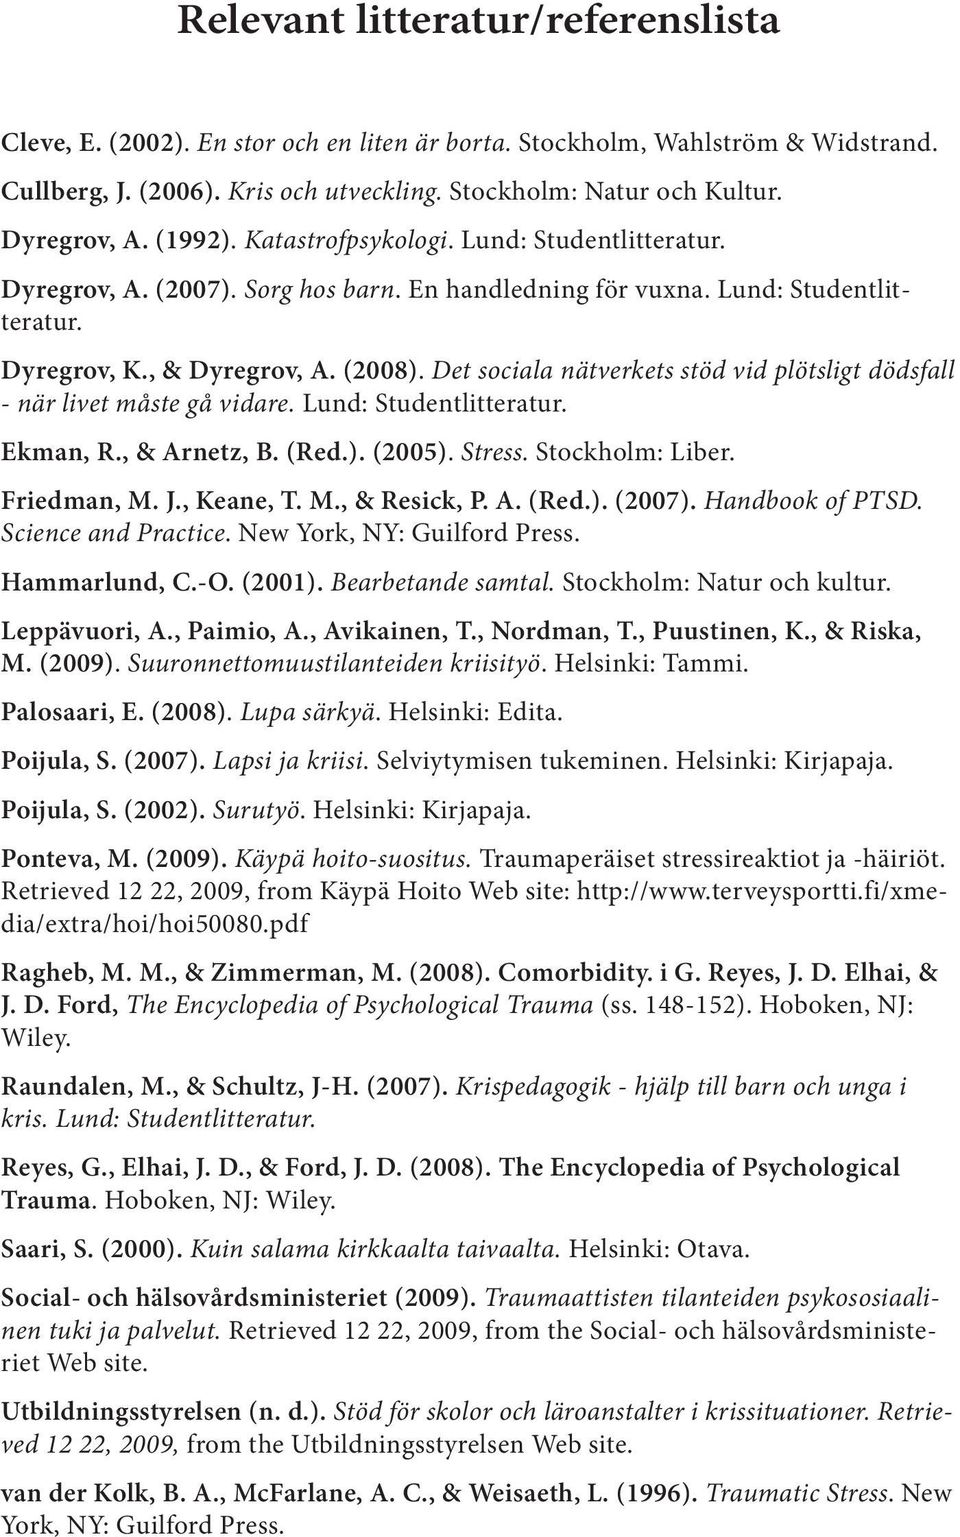 Det sociala nätverkets stöd vid plötsligt dödsfall - när livet måste gå vidare. Lund: Studentlitteratur. Ekman, R., & Arnetz, B. (Red.). (2005). Stress. Stockholm: Liber. Friedman, M. J., Keane, T. M., & Resick, P.